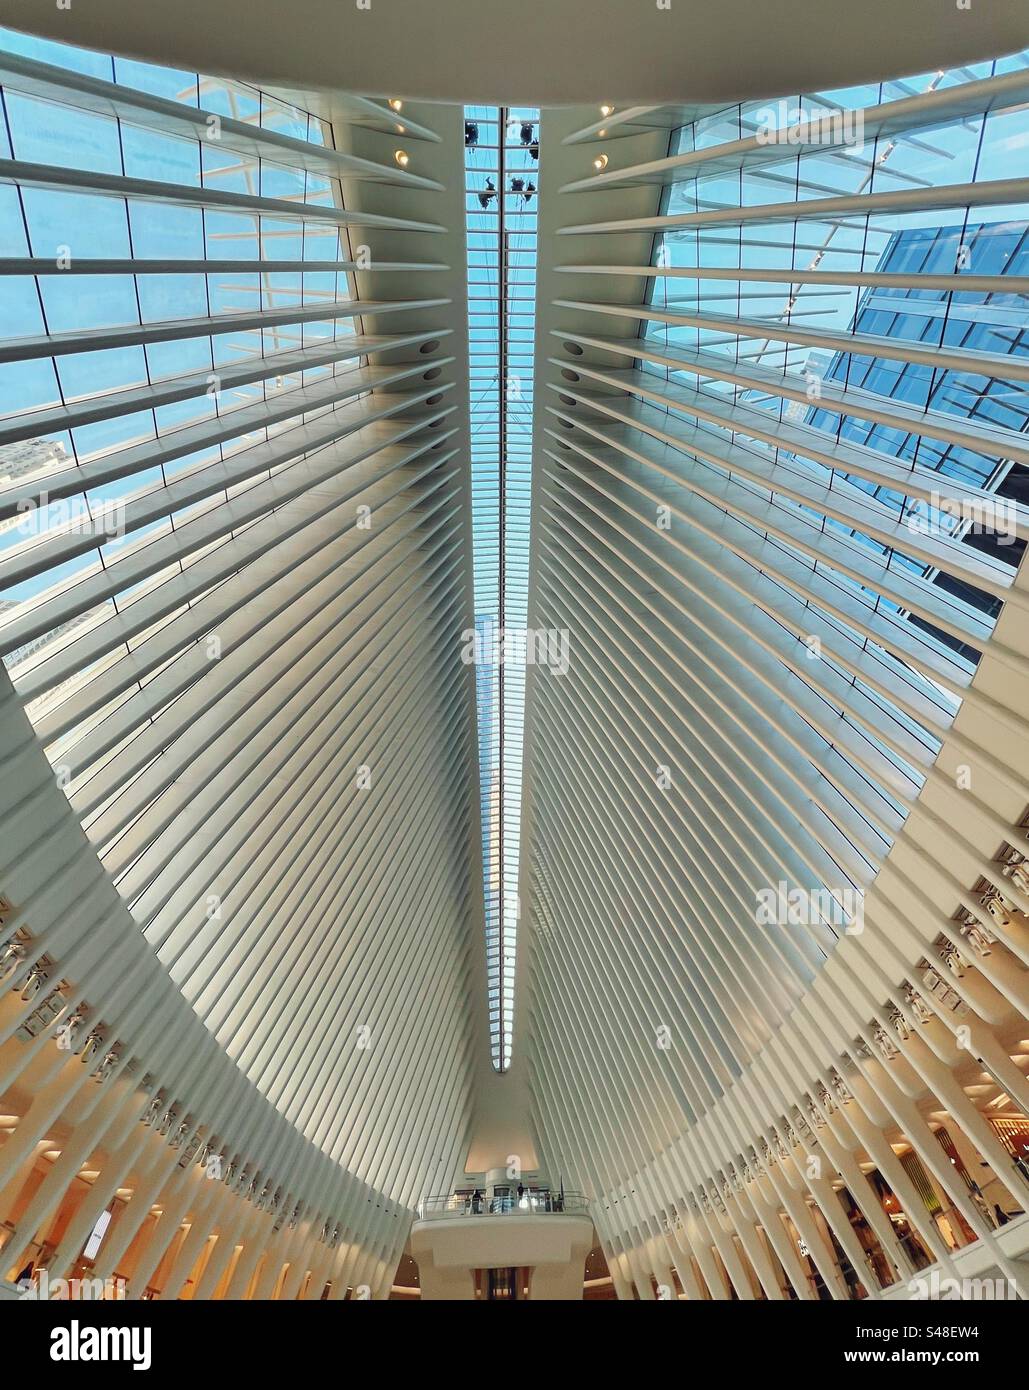 Entrepreneurs travaillant sur les fenêtres supérieures du bâtiment Oculus. Il s'agit de la station World Trade Center pour PATH ainsi que la connexion à un centre commercial (Westfield World Trade Center). Banque D'Images